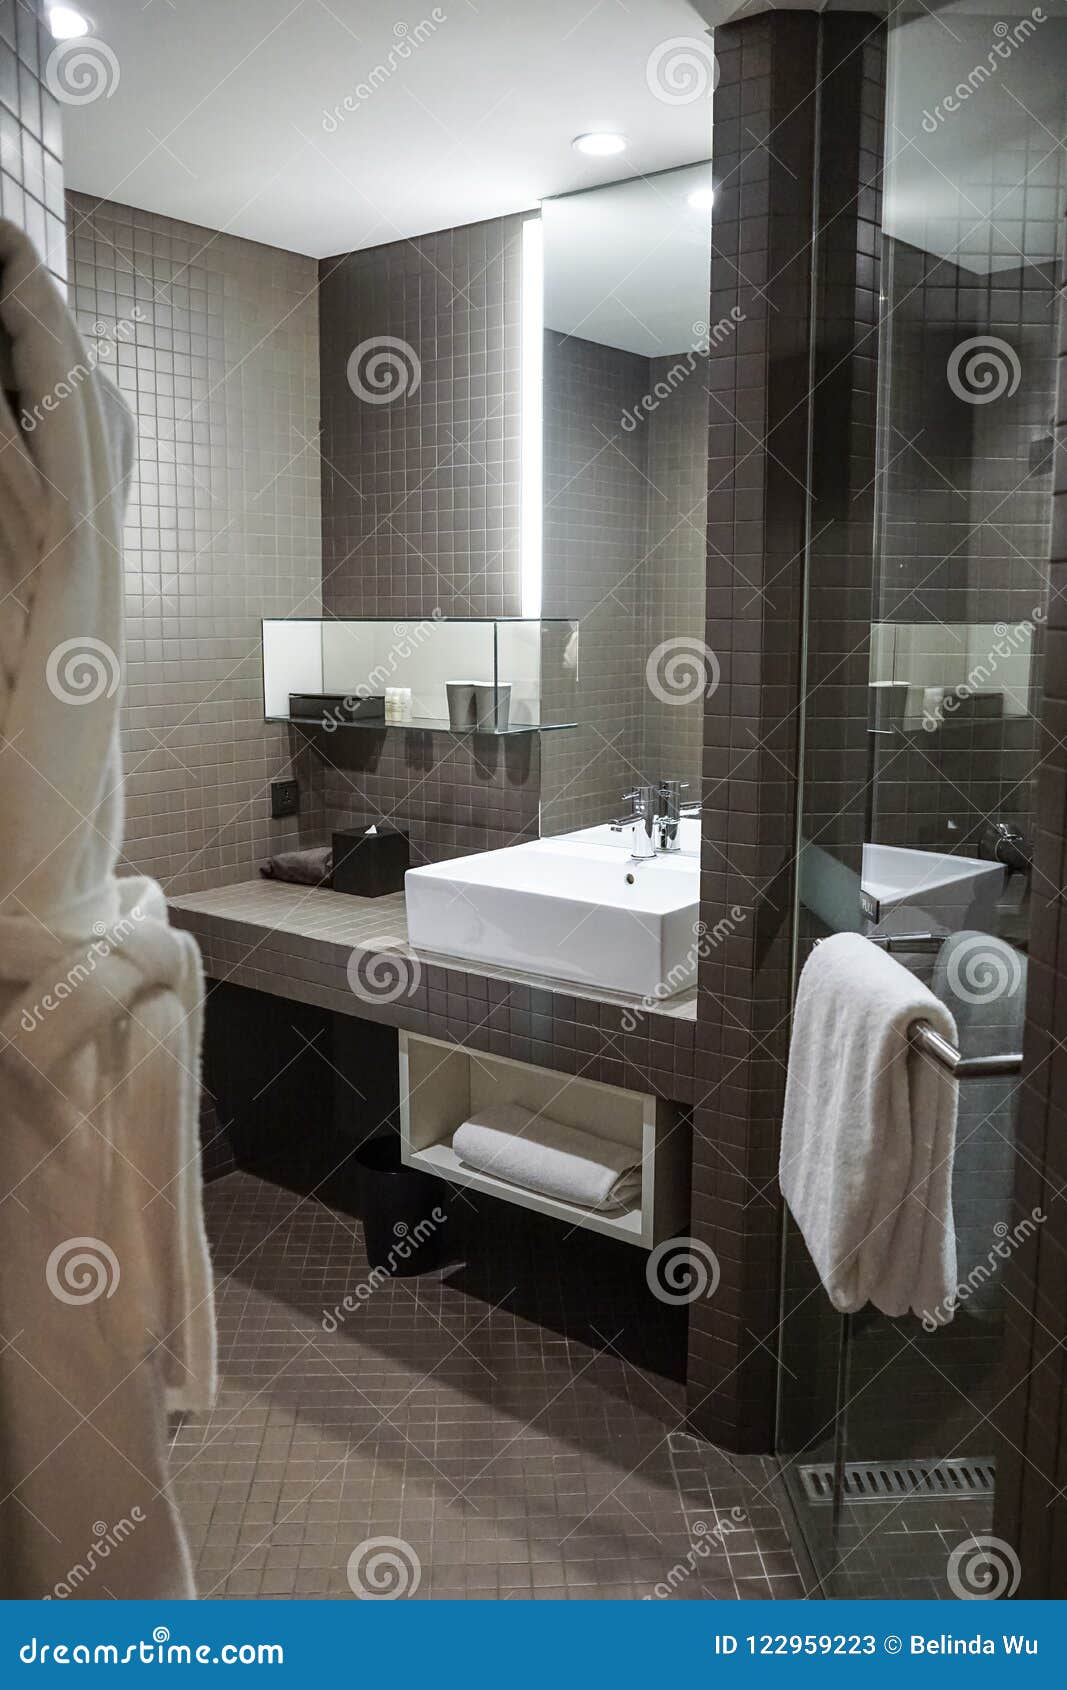 Modern Minimalist Bathroom Stock Image Image Of Clean 122959223